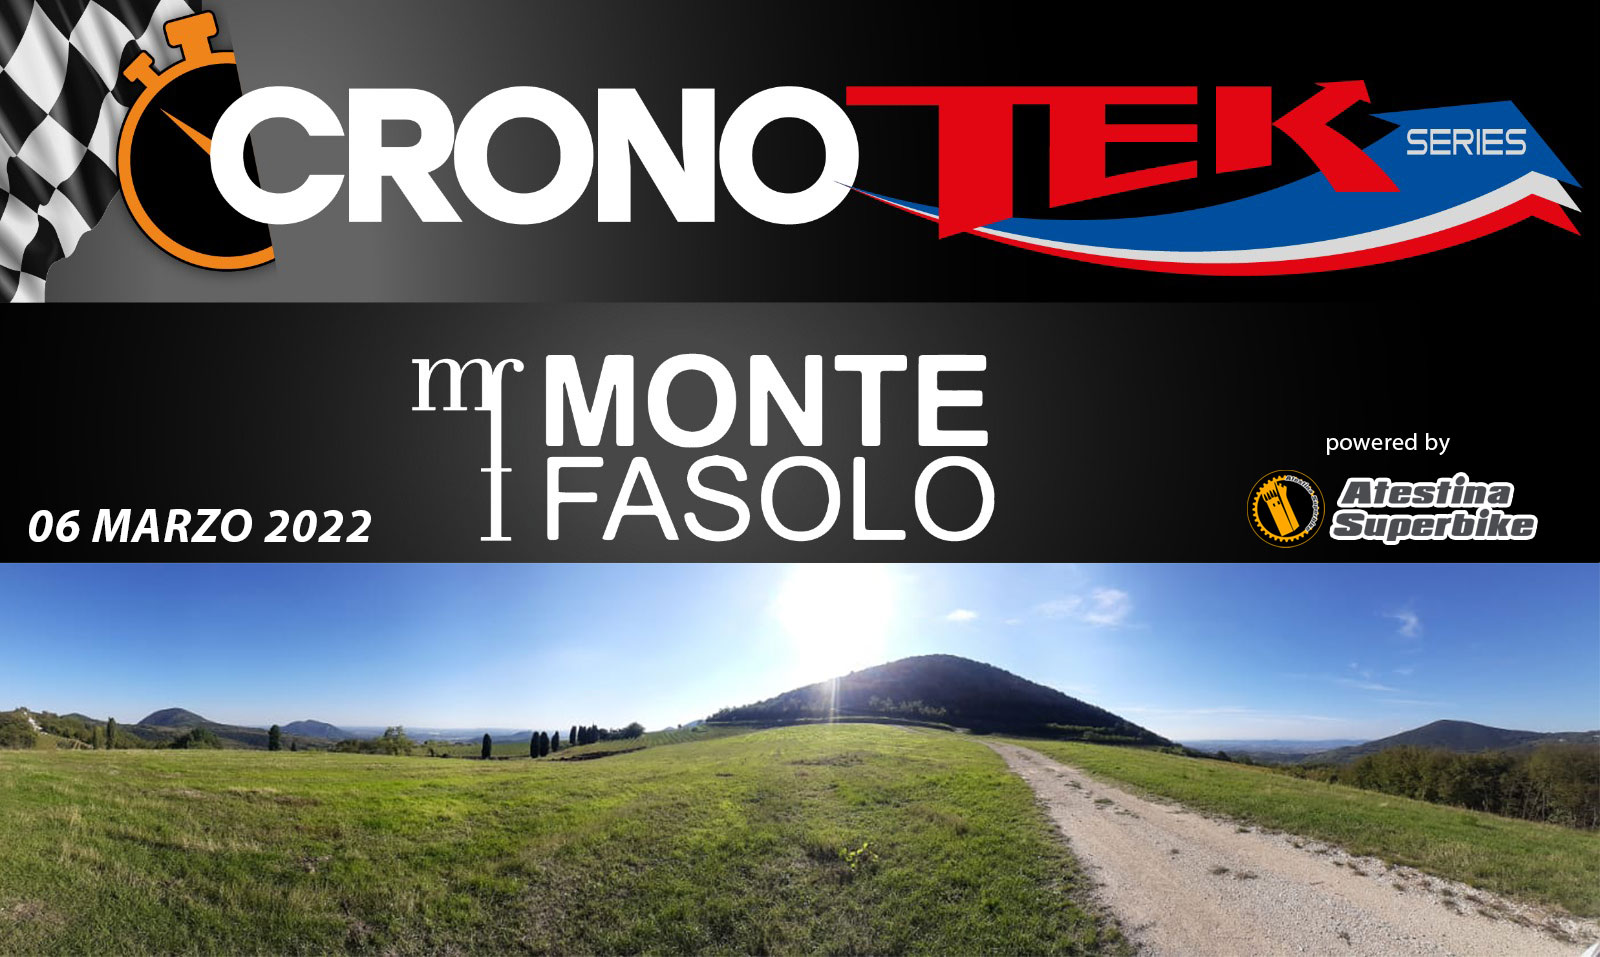 24/1/2022 Cronotek Monte Fasolo, Galzigano (PD), ecco il regolamento.